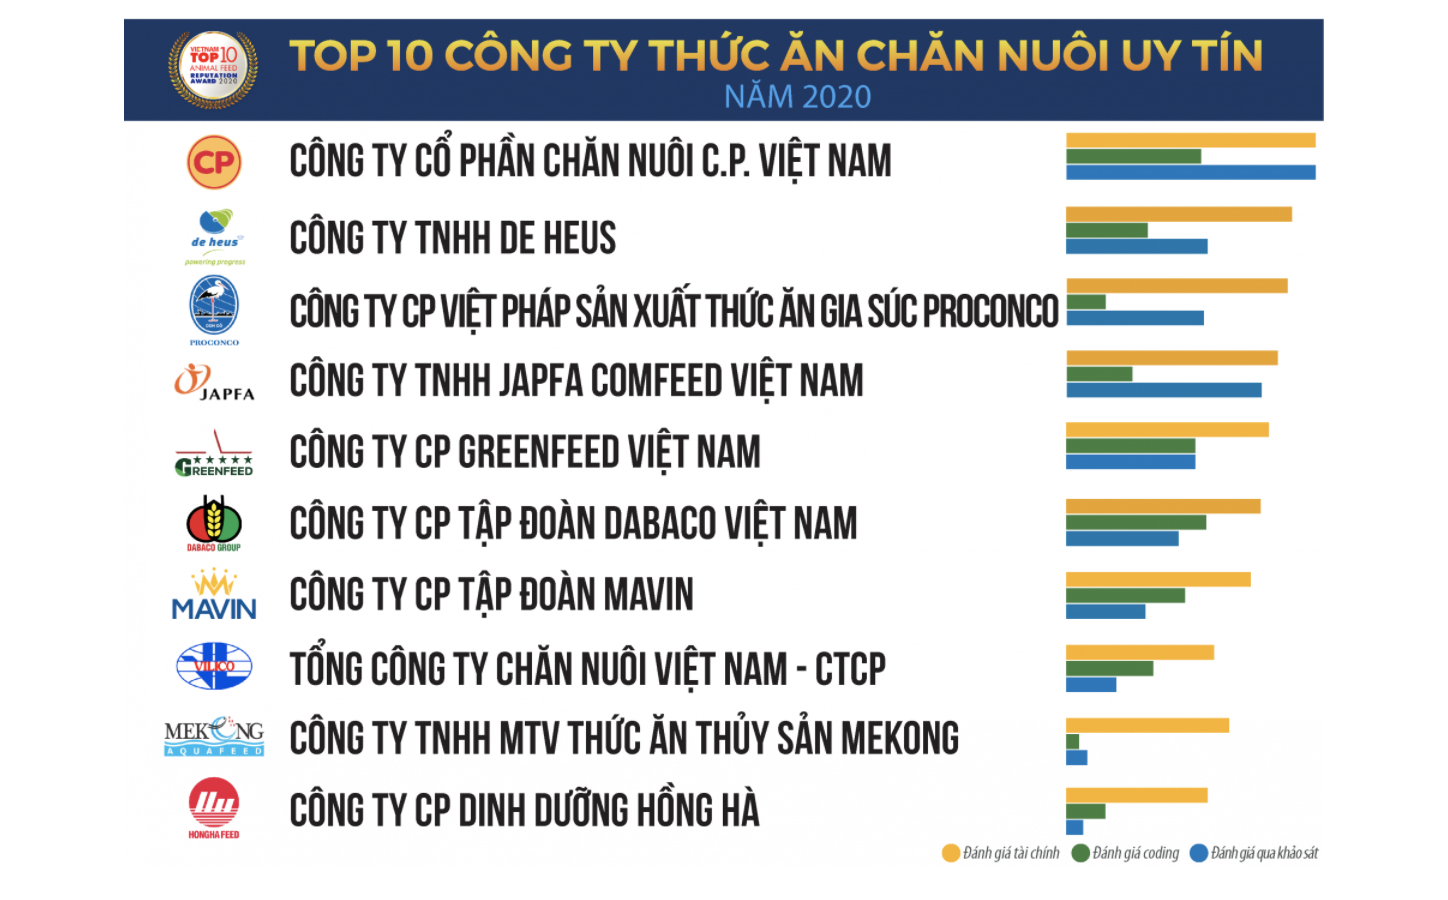 Doanh nghiệp ngoại chiếm 1/3 thị phần thức ăn chăn nuôi Việt Nam - Ảnh 1.